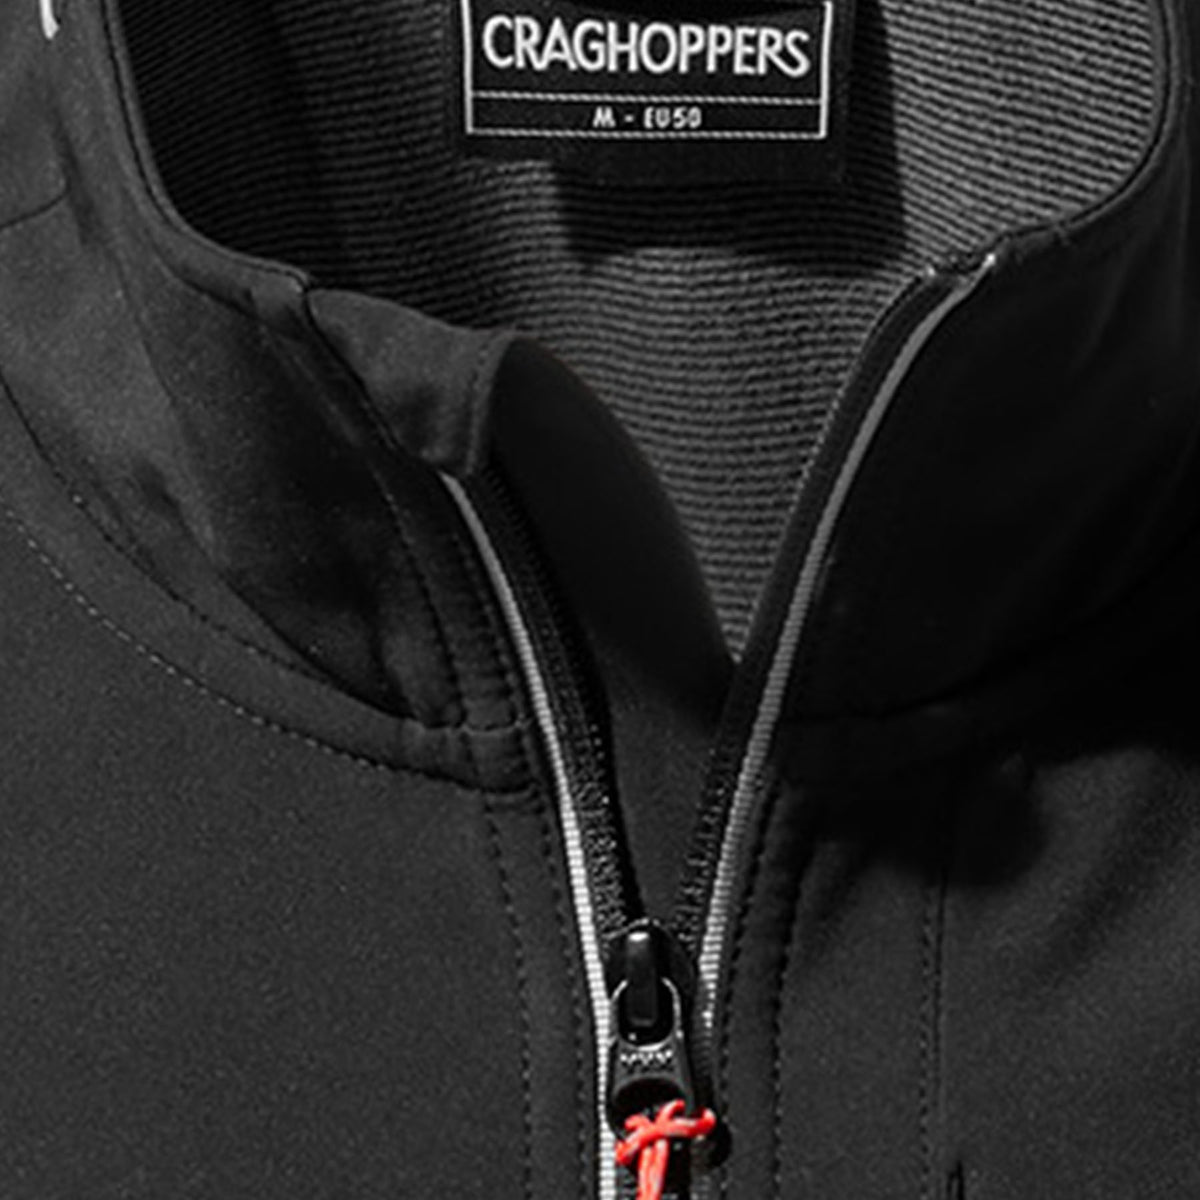 Craghoppers Men's Lightweight Altis Jacket 